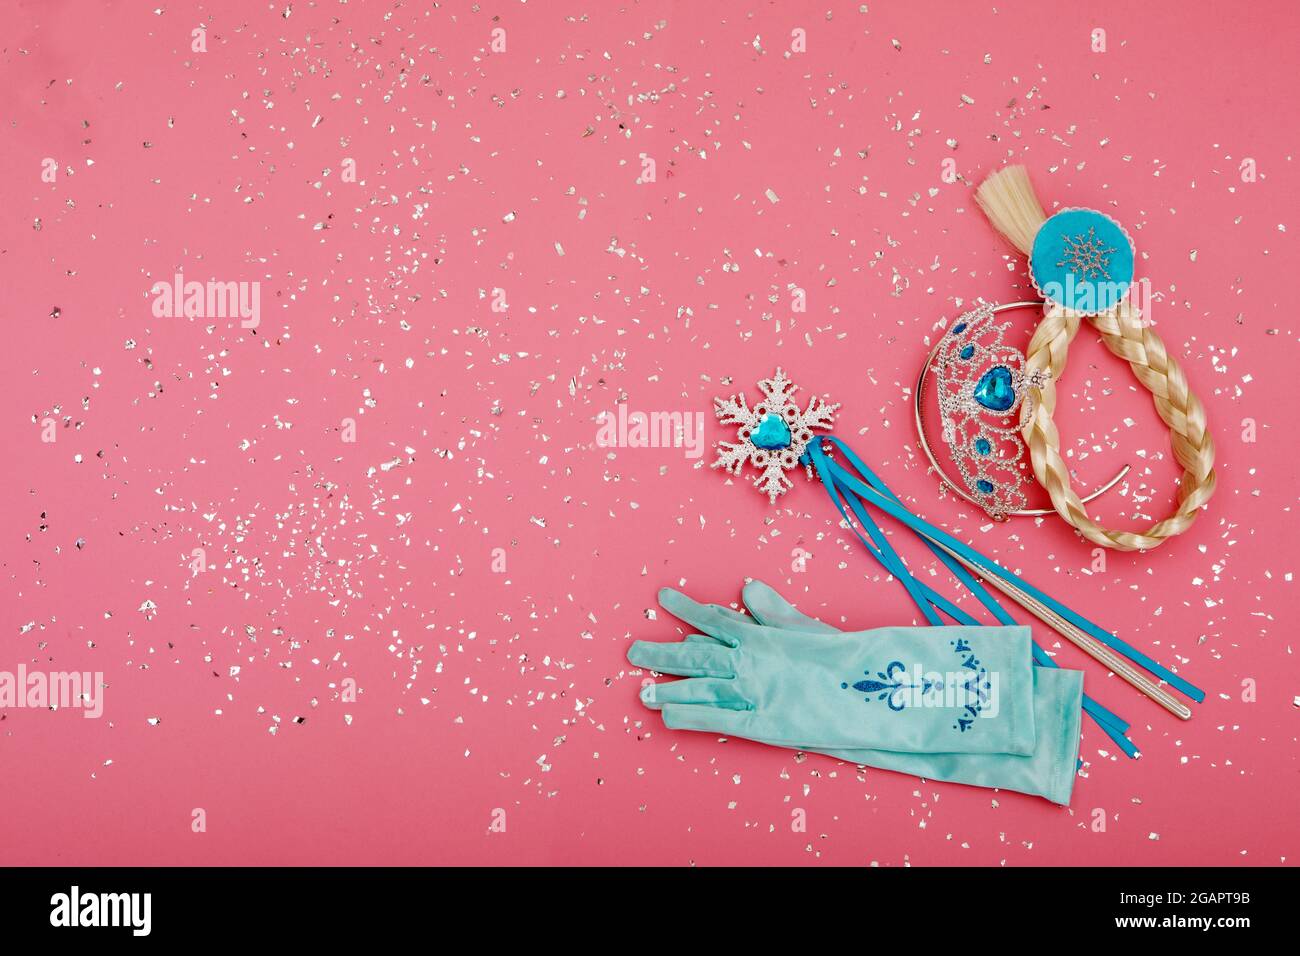 Dall'alto della bacchetta magica e dei guanti posizionati vicino alla corona e al pigtail su sfondo rosa con glitter argento Foto Stock